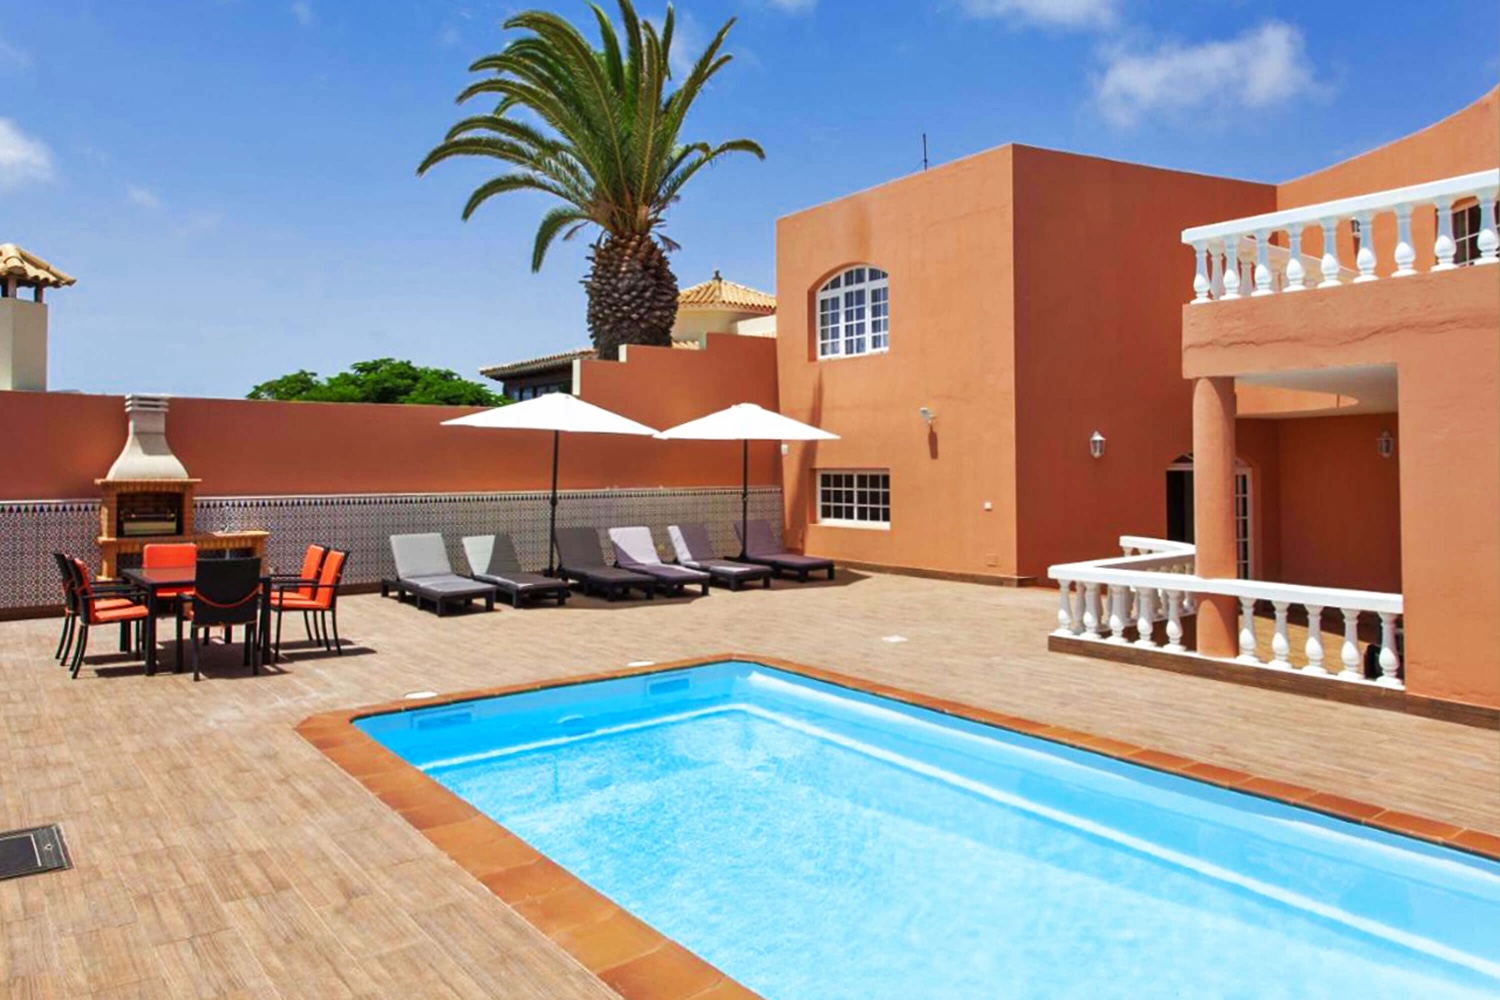 Moderne feriehus med privat basseng for en avslappende strandferie i Caleta de Fuste